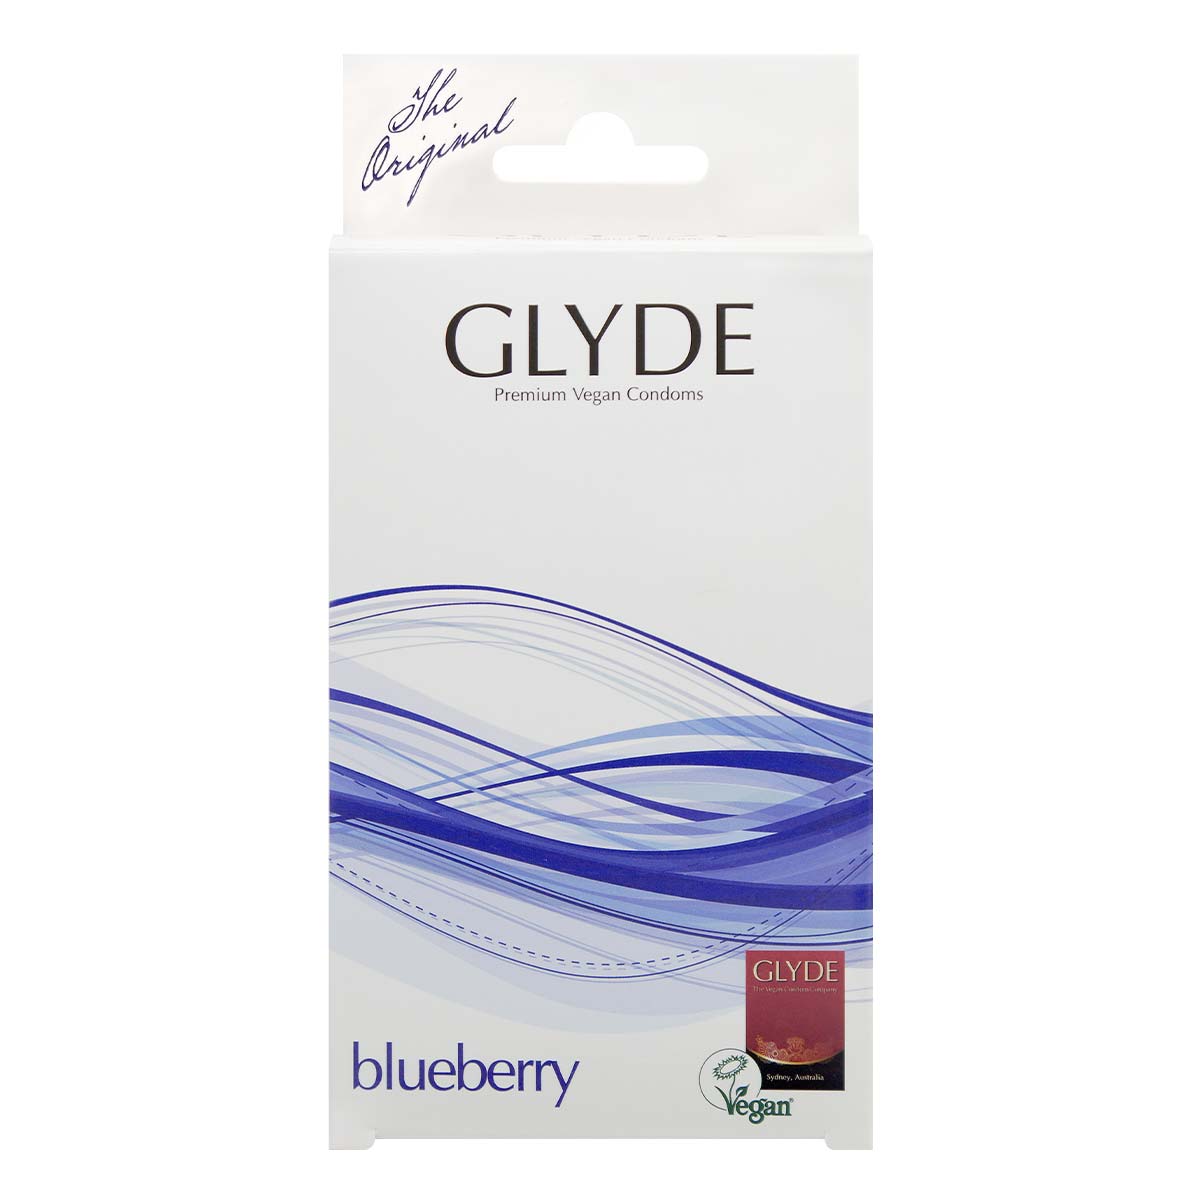 Glyde 格蕾迪 素食主义安全套 蓝莓香 10 片装 乳胶安全套-p_2